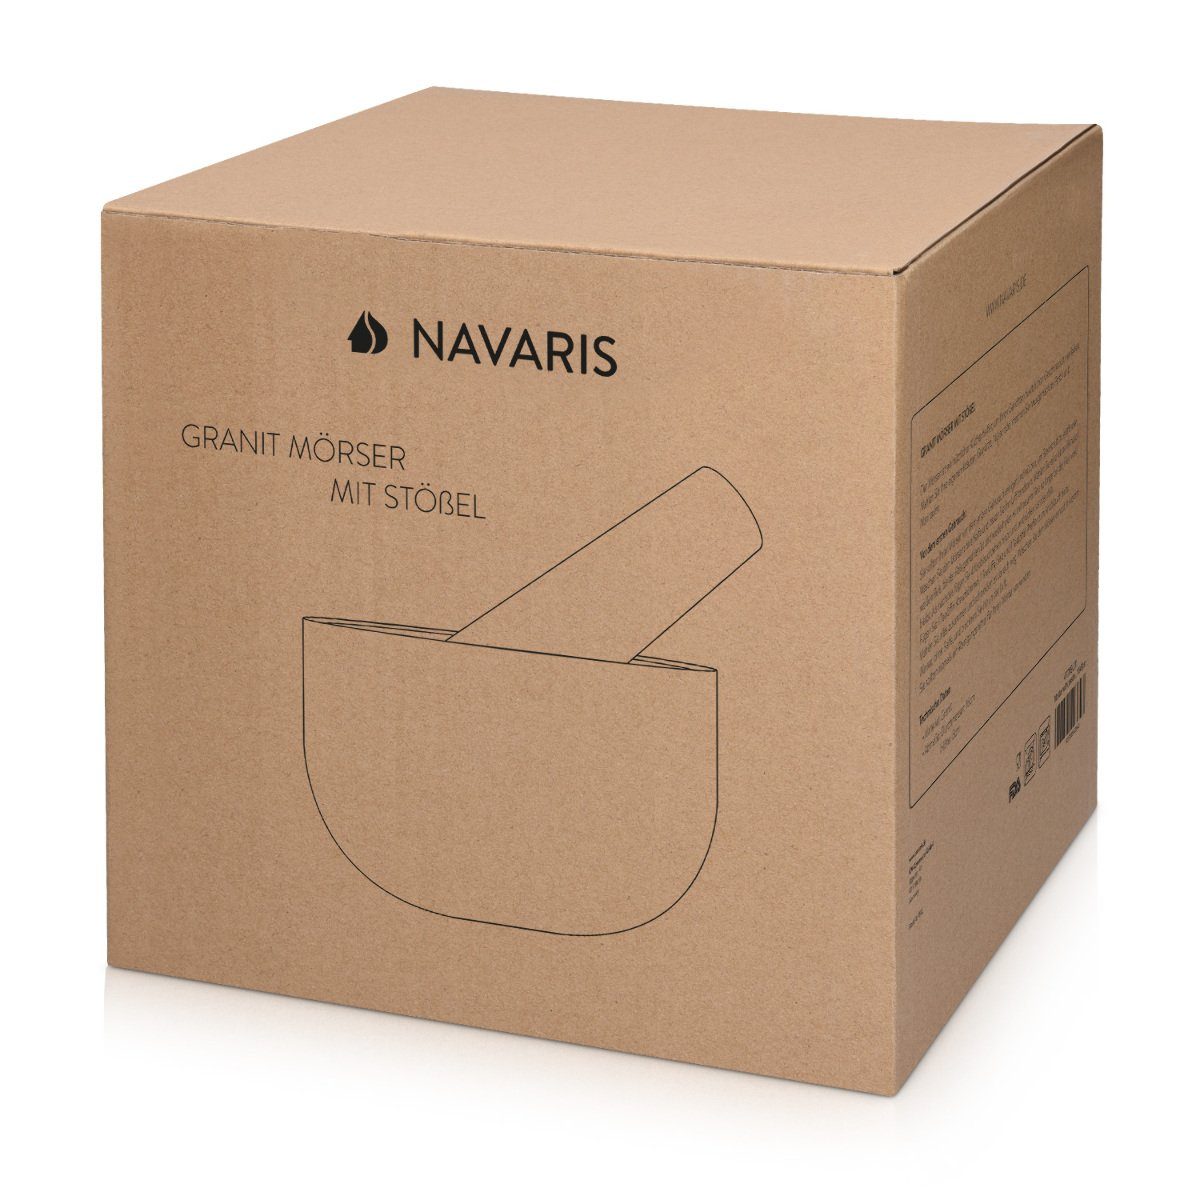 Navaris aus großes - Ø Gewürzmörser mit 16cm Granit Schlegel Mörser Set -